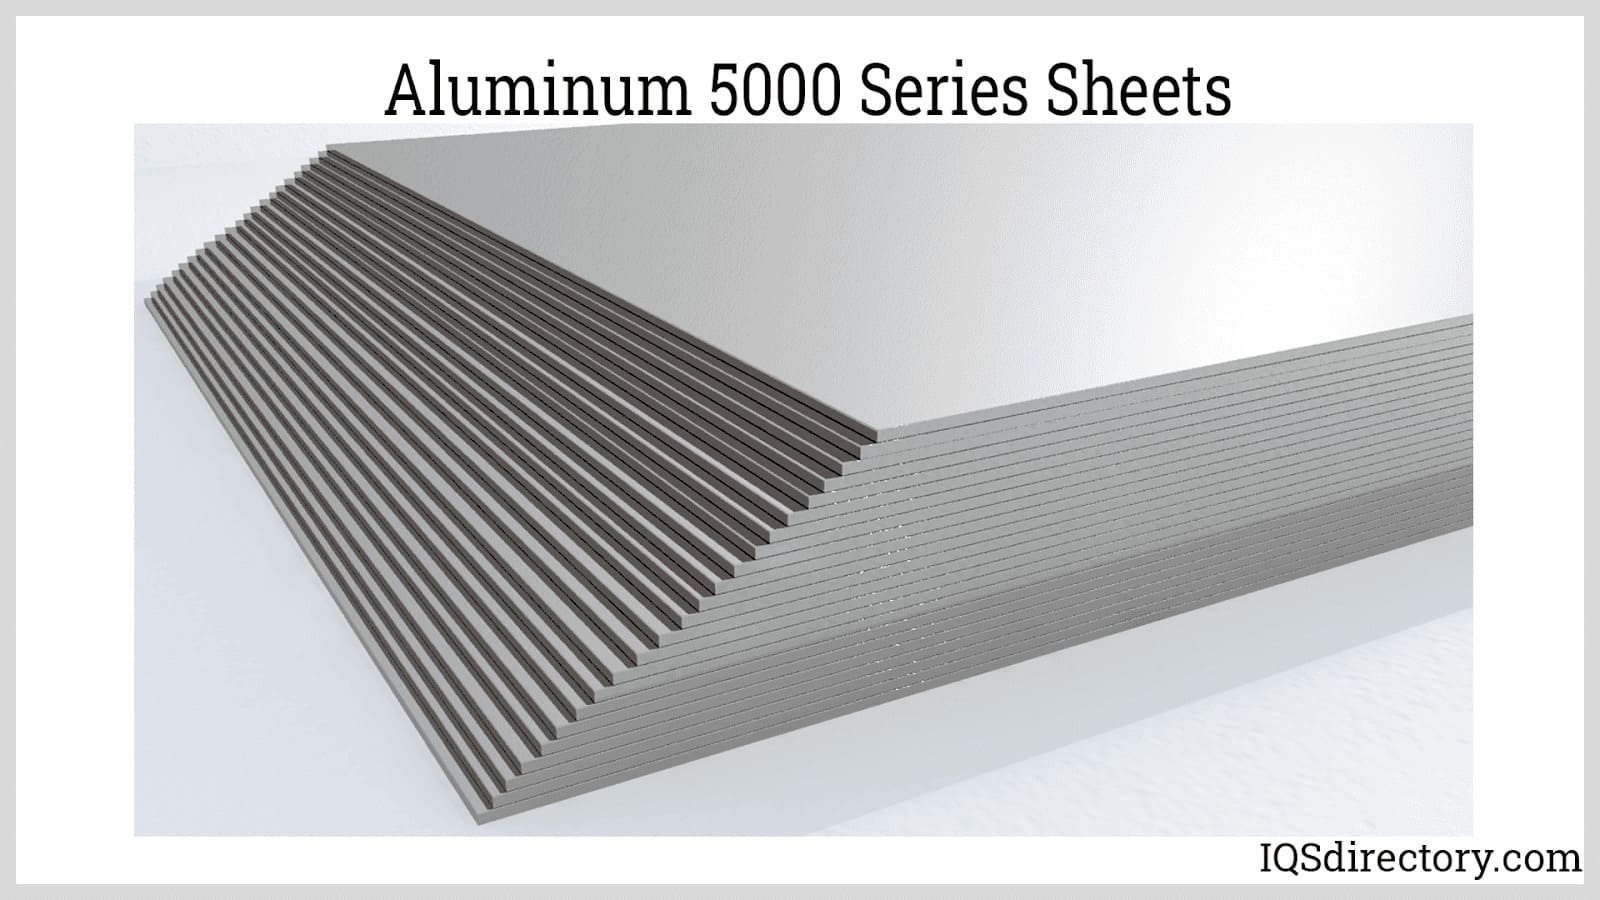 Aluminized 5000 Series Sheets